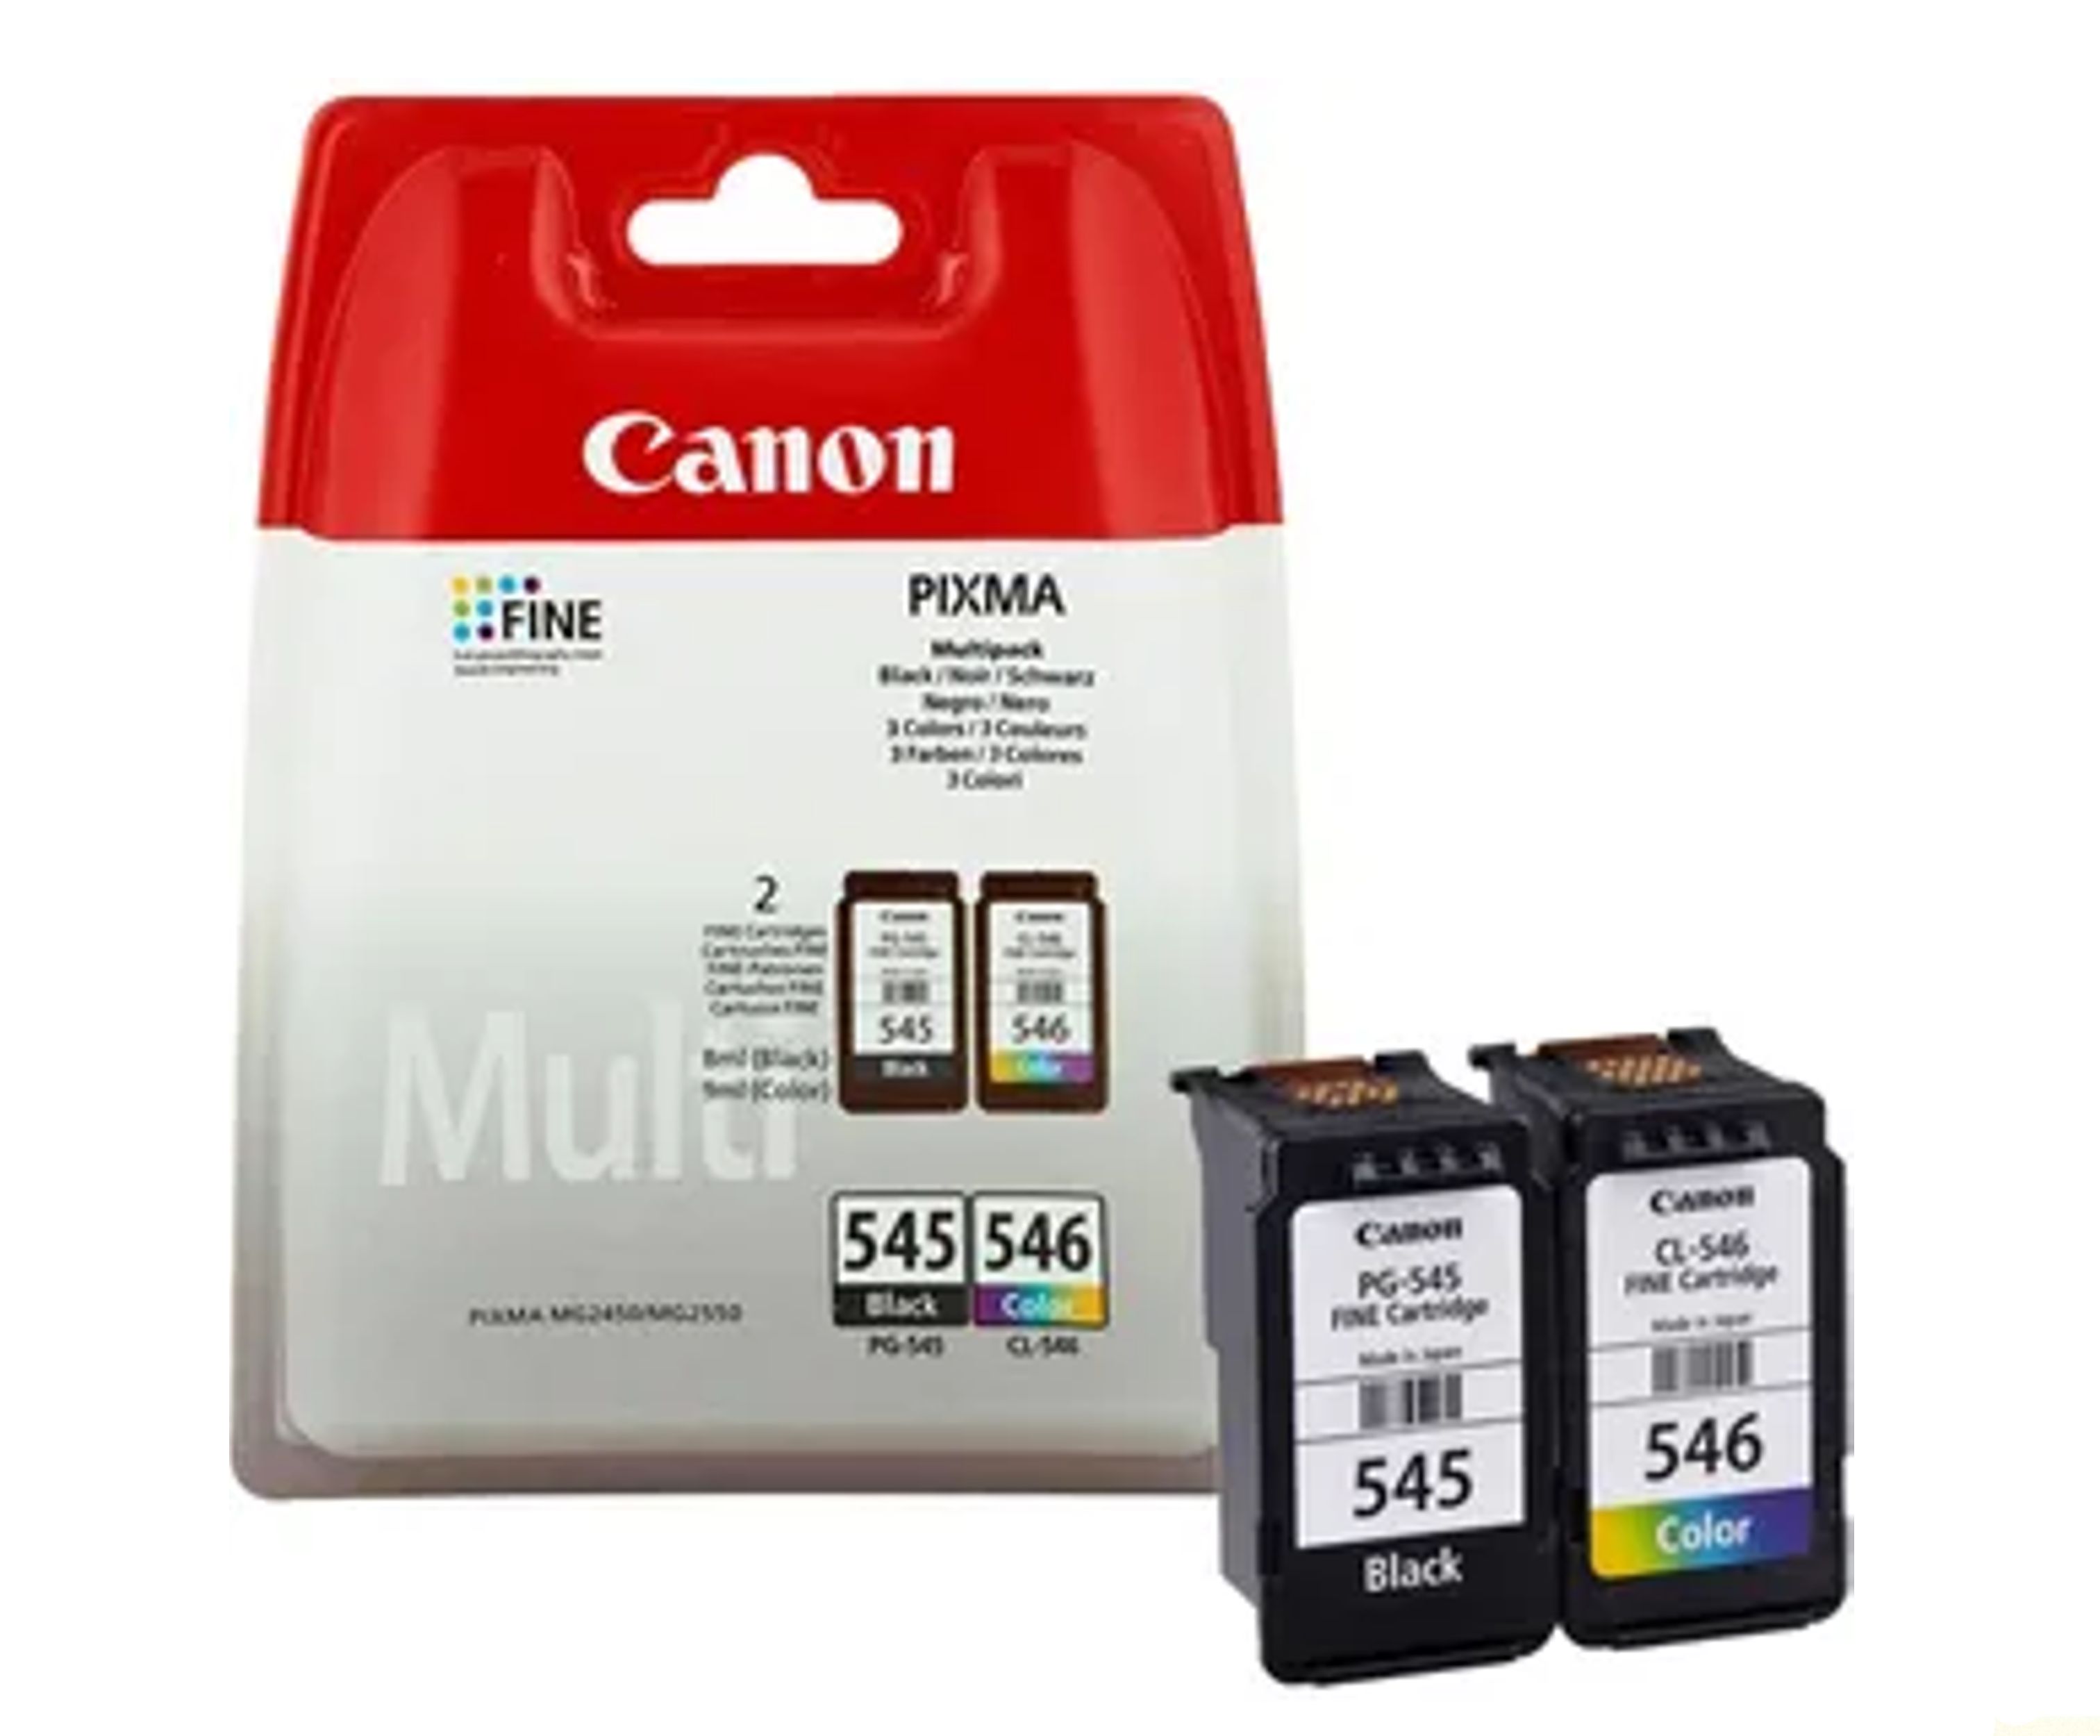 printor - CANON, PG-545 + CL-546, Tinte